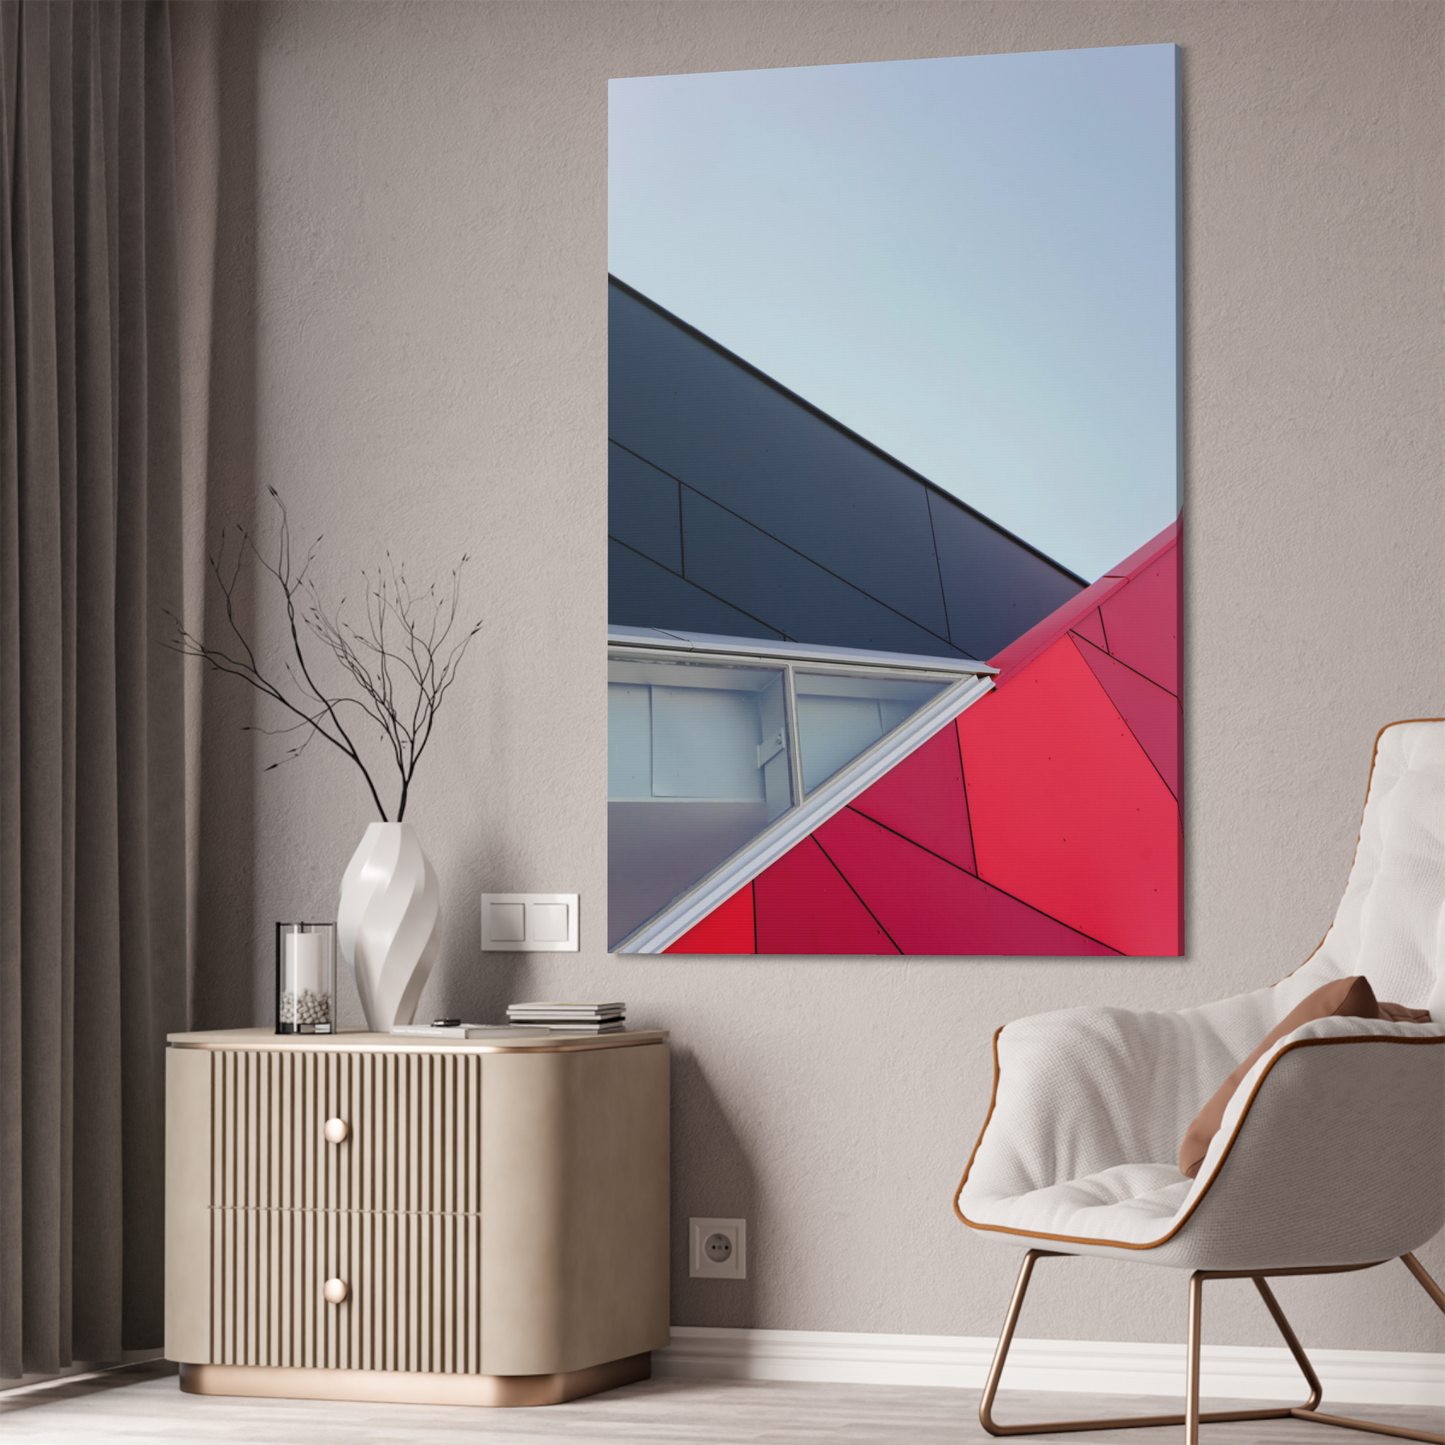 Dynamic Minimalism: Framed Canvas Art for a Bold Wall Display